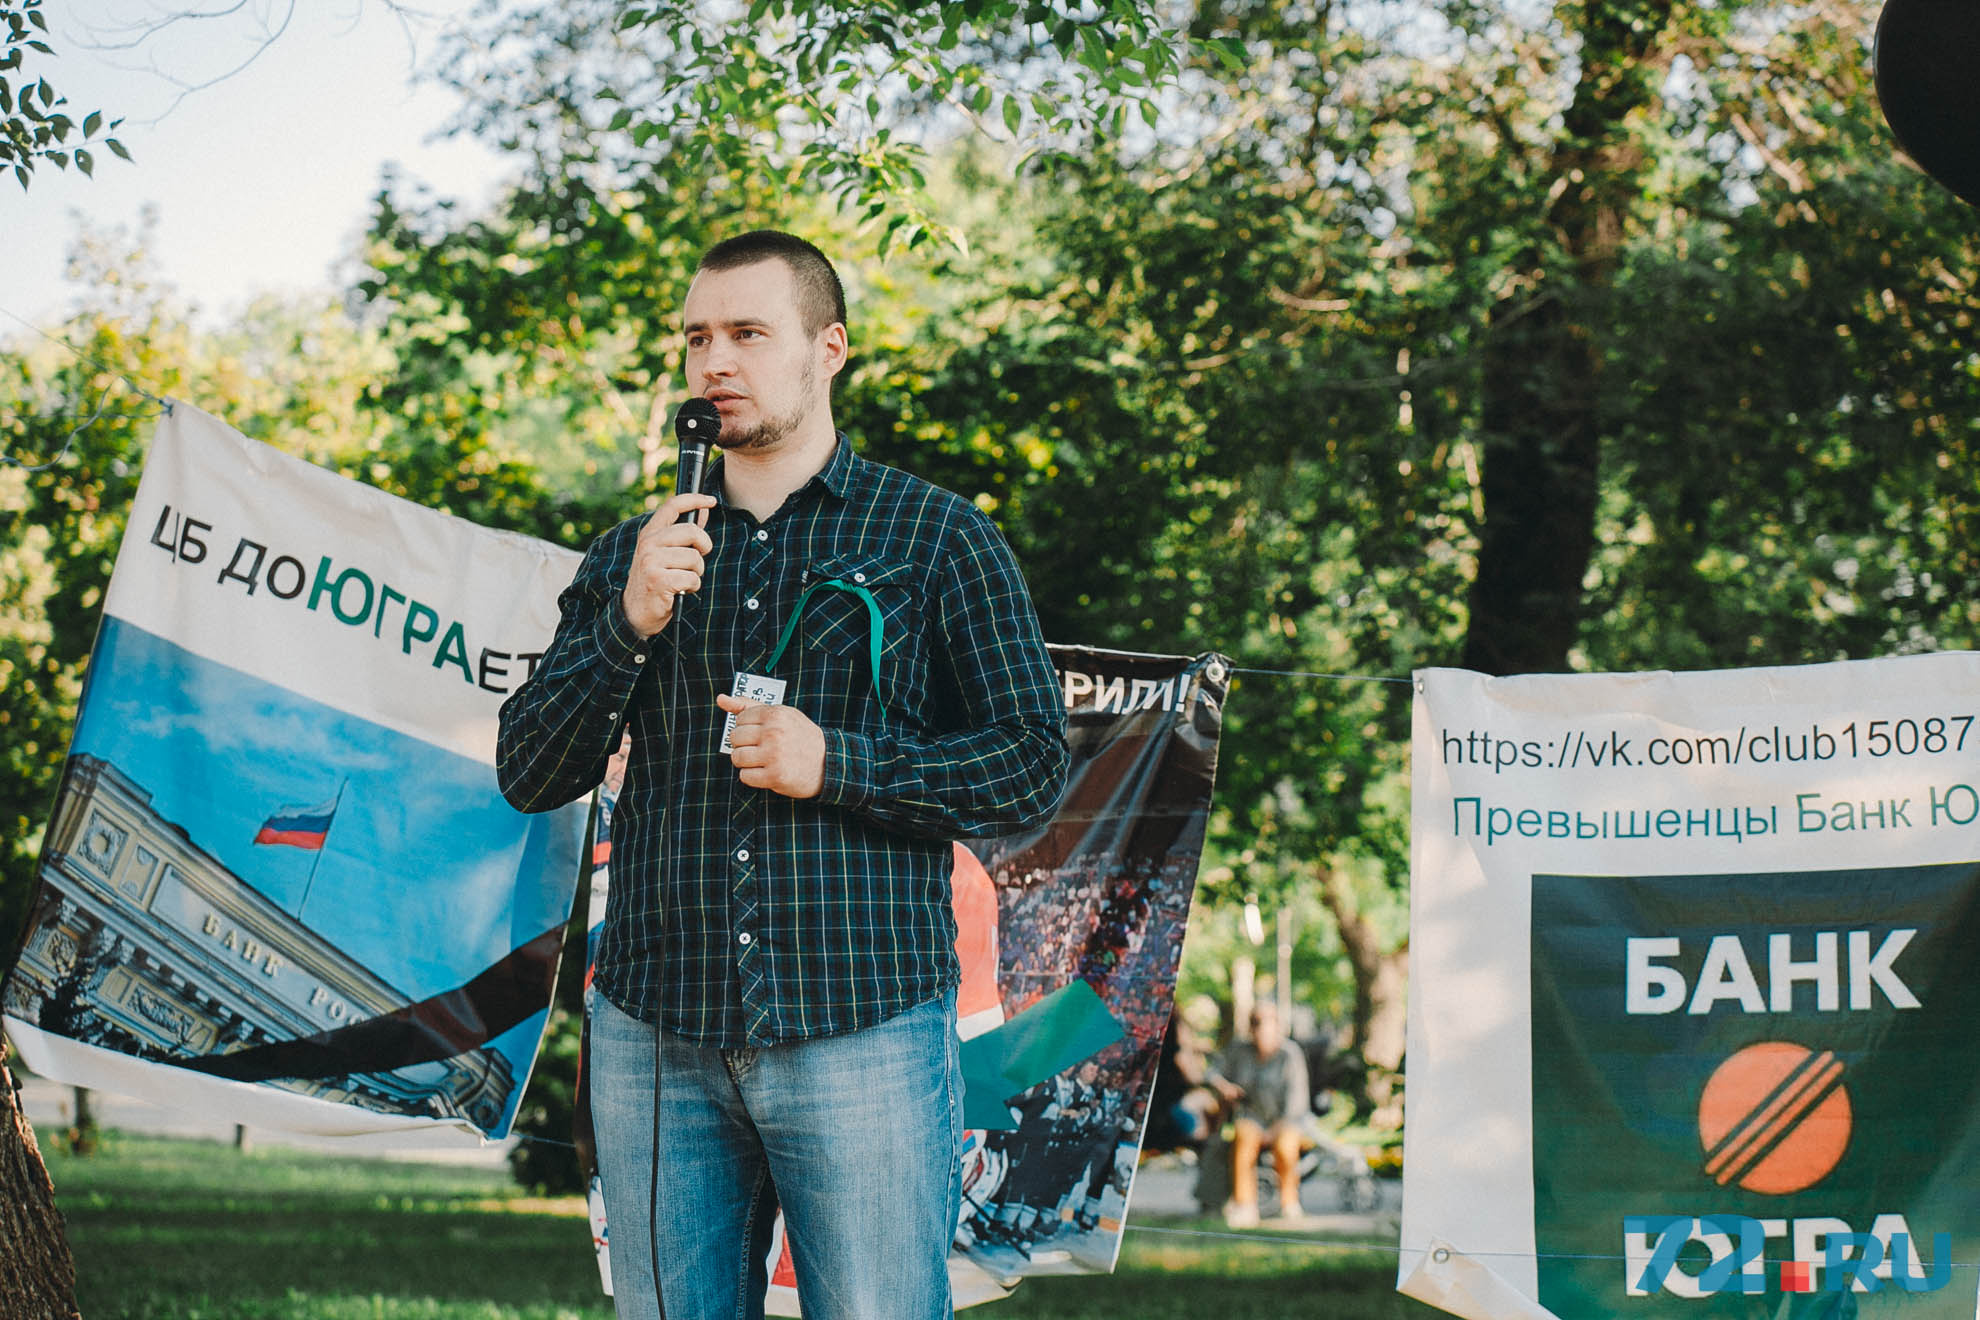 Первым выступил организатор митинга Николай Николаев